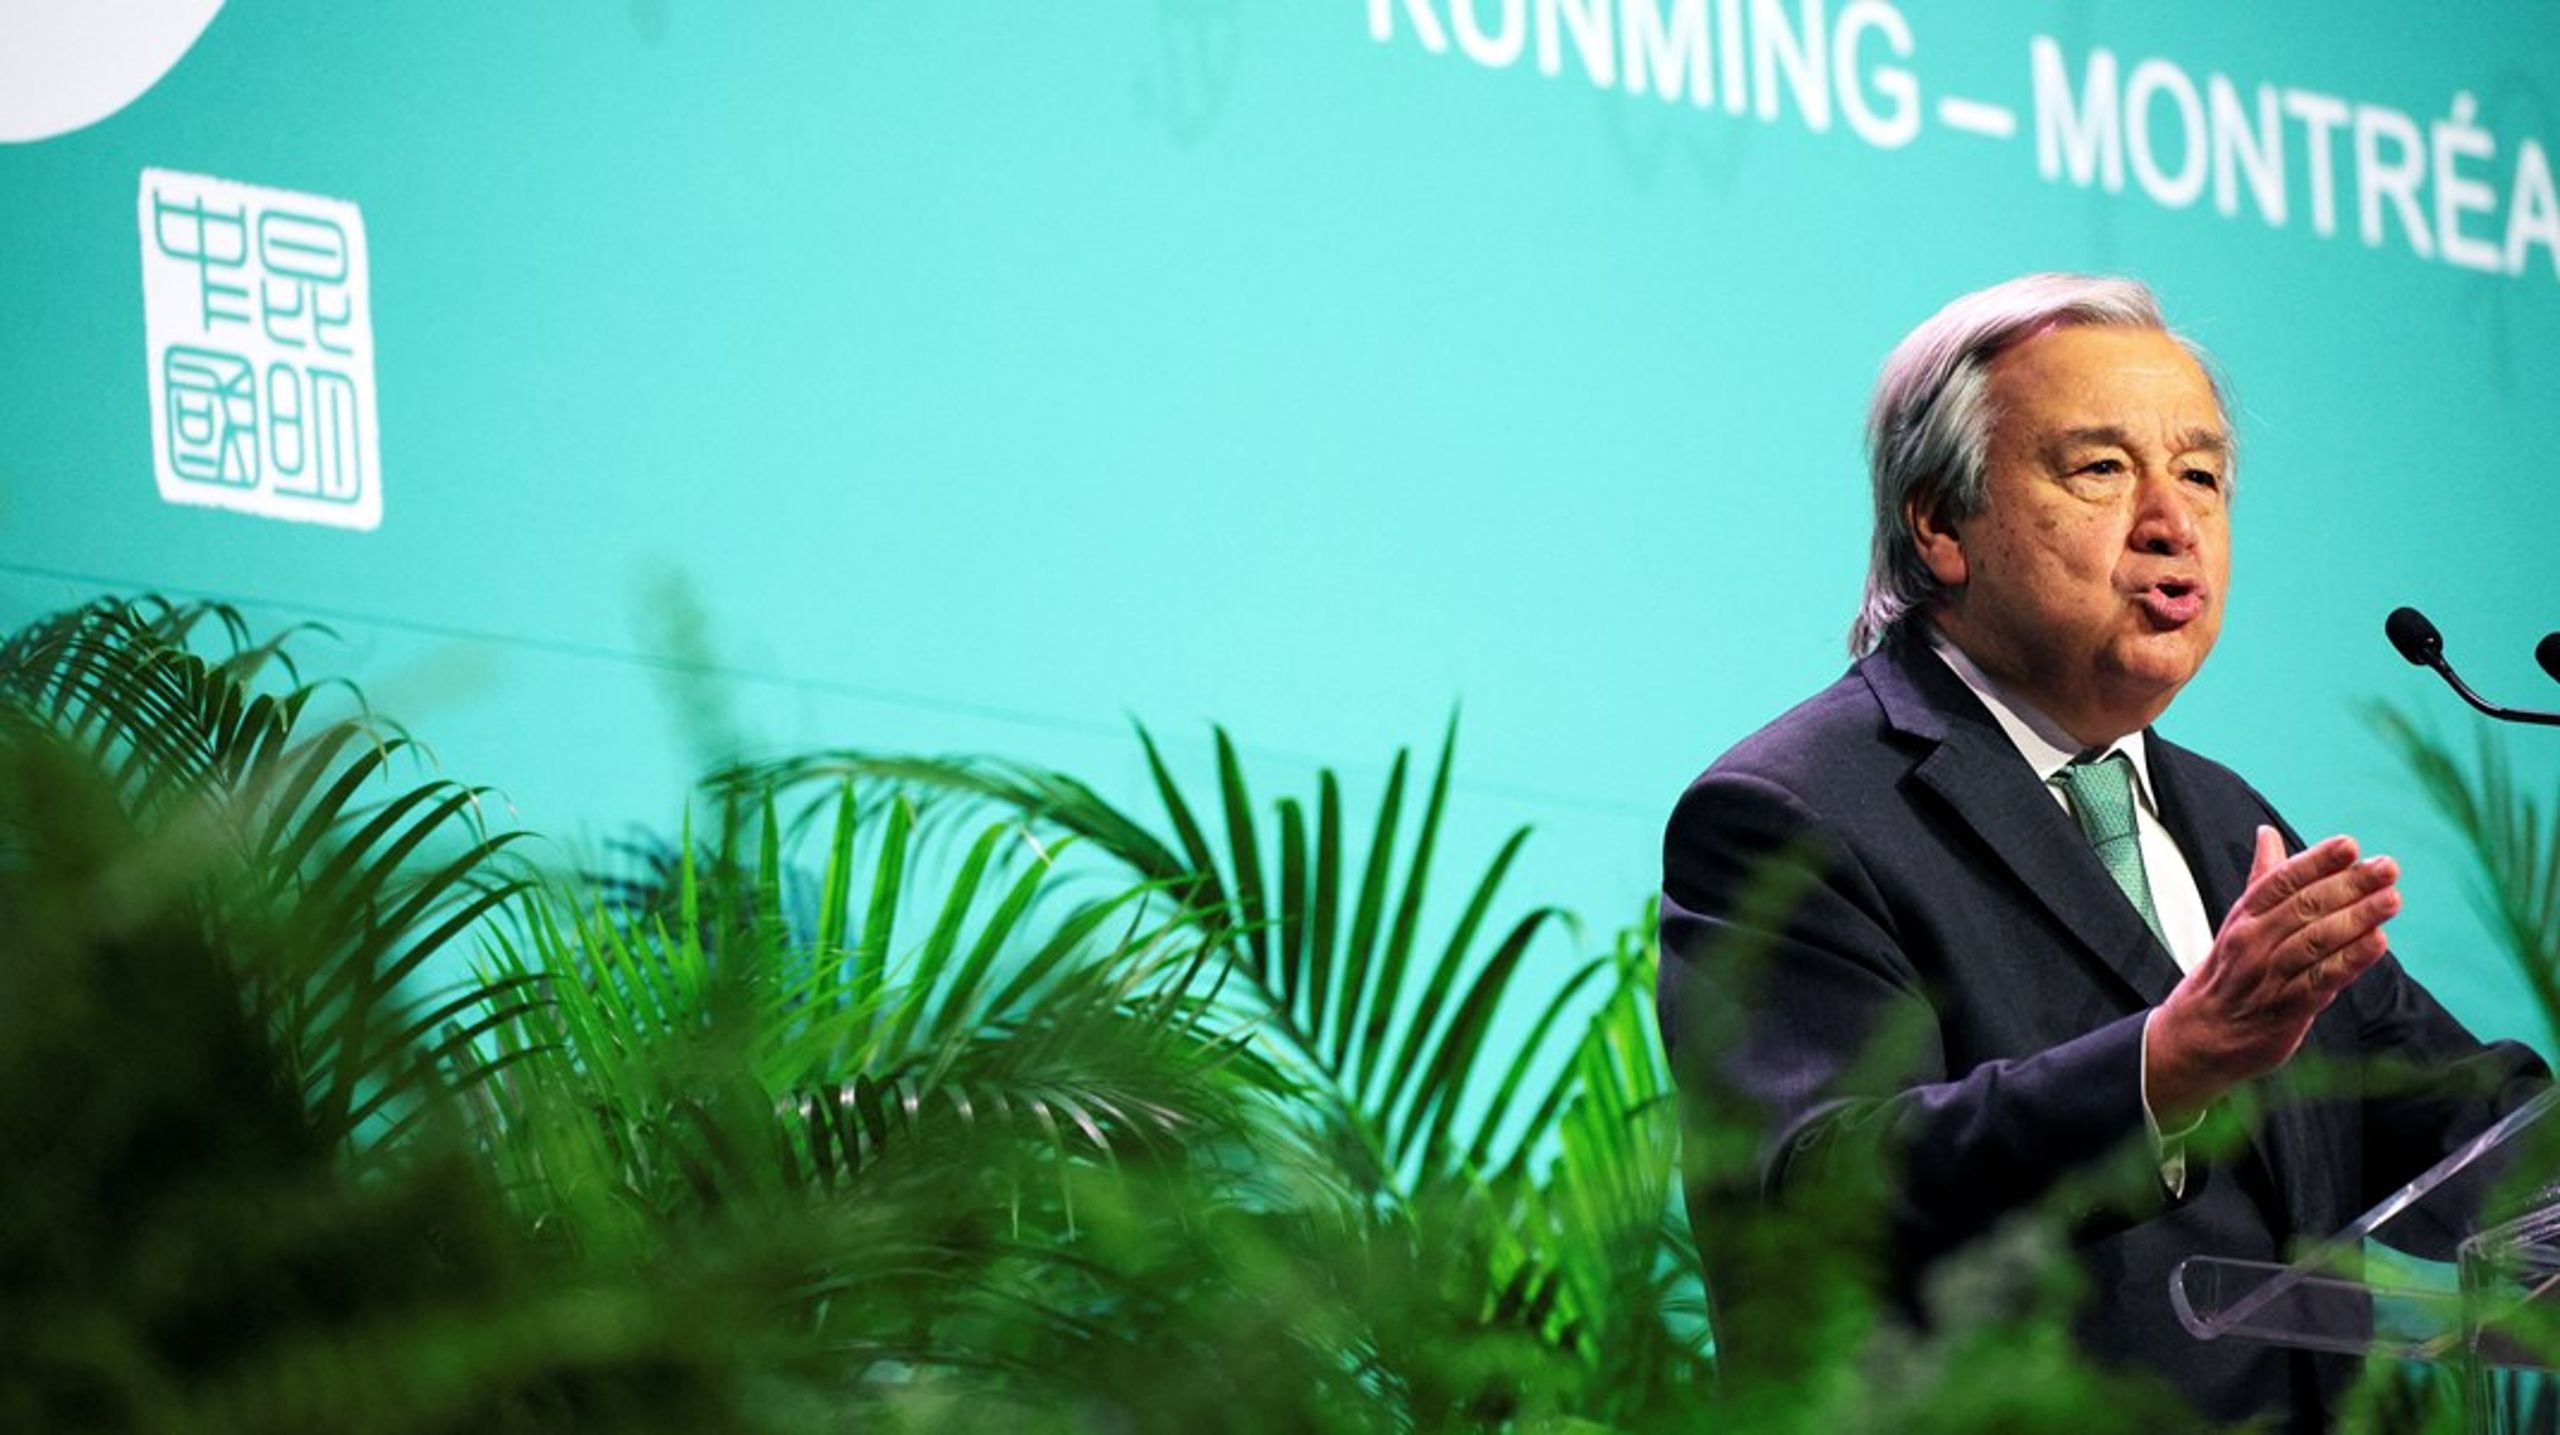 FN's generalsekretær António Guterres taler ved åbningen af biodiversitetstopmøde - Cop15 - i Montreal.